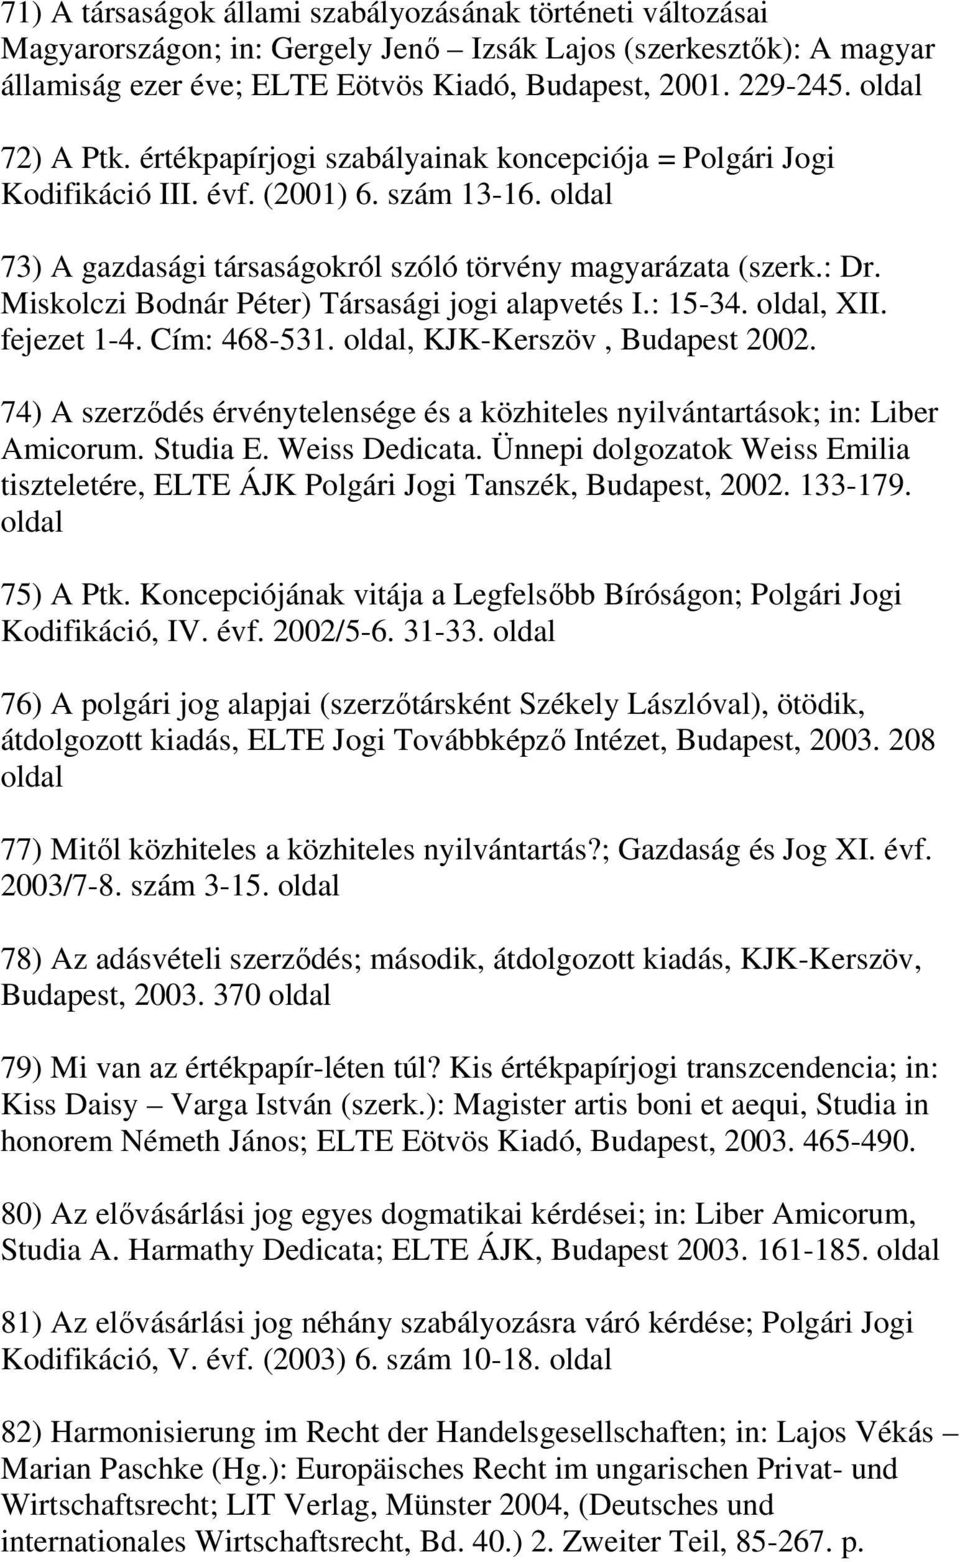 Miskolczi Bodnár Péter) Társasági jogi alapvetés I.: 15-34. oldal, XII. fejezet 1-4. Cím: 468-531. oldal, KJK-Kerszöv, Budapest 2002.